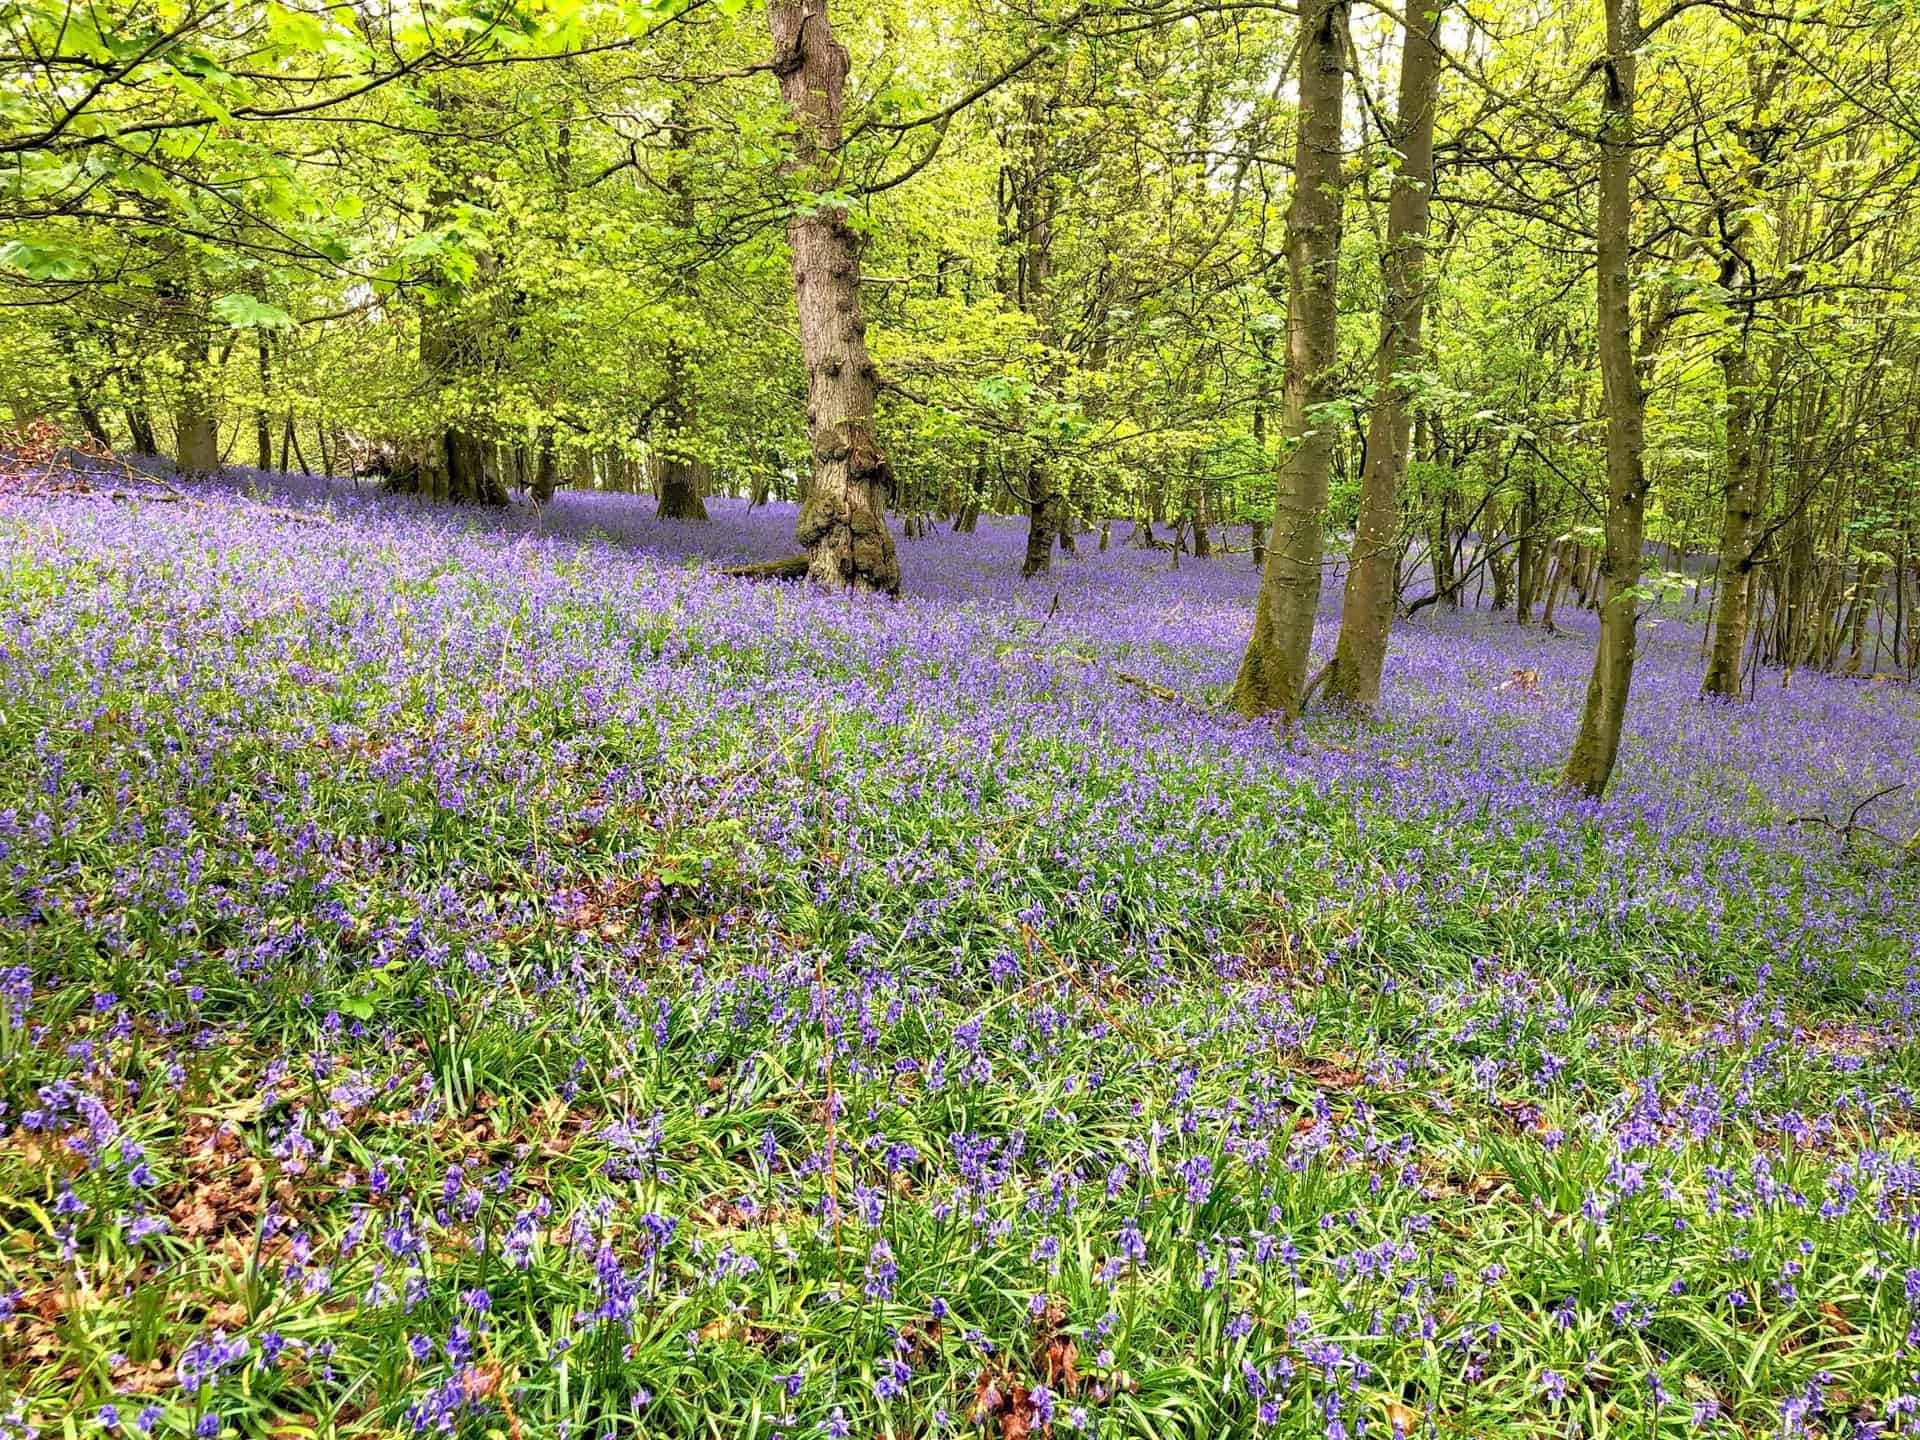 A mystical purple blanket of flowering bluebells in Flakebridge Wood.